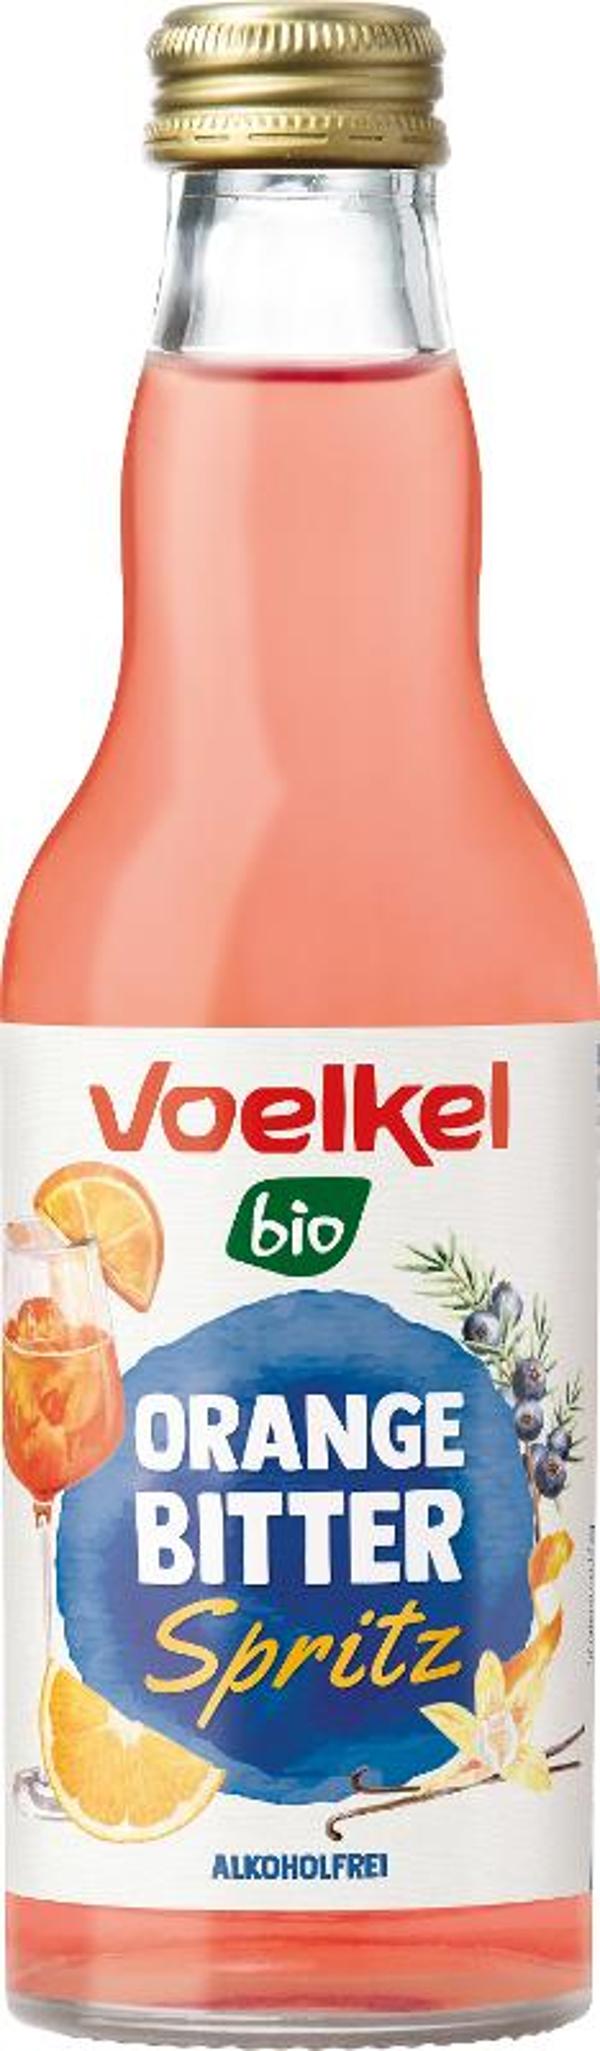 Produktfoto zu Cocktail Orange Bitter Spritz 0,2l Voelkel